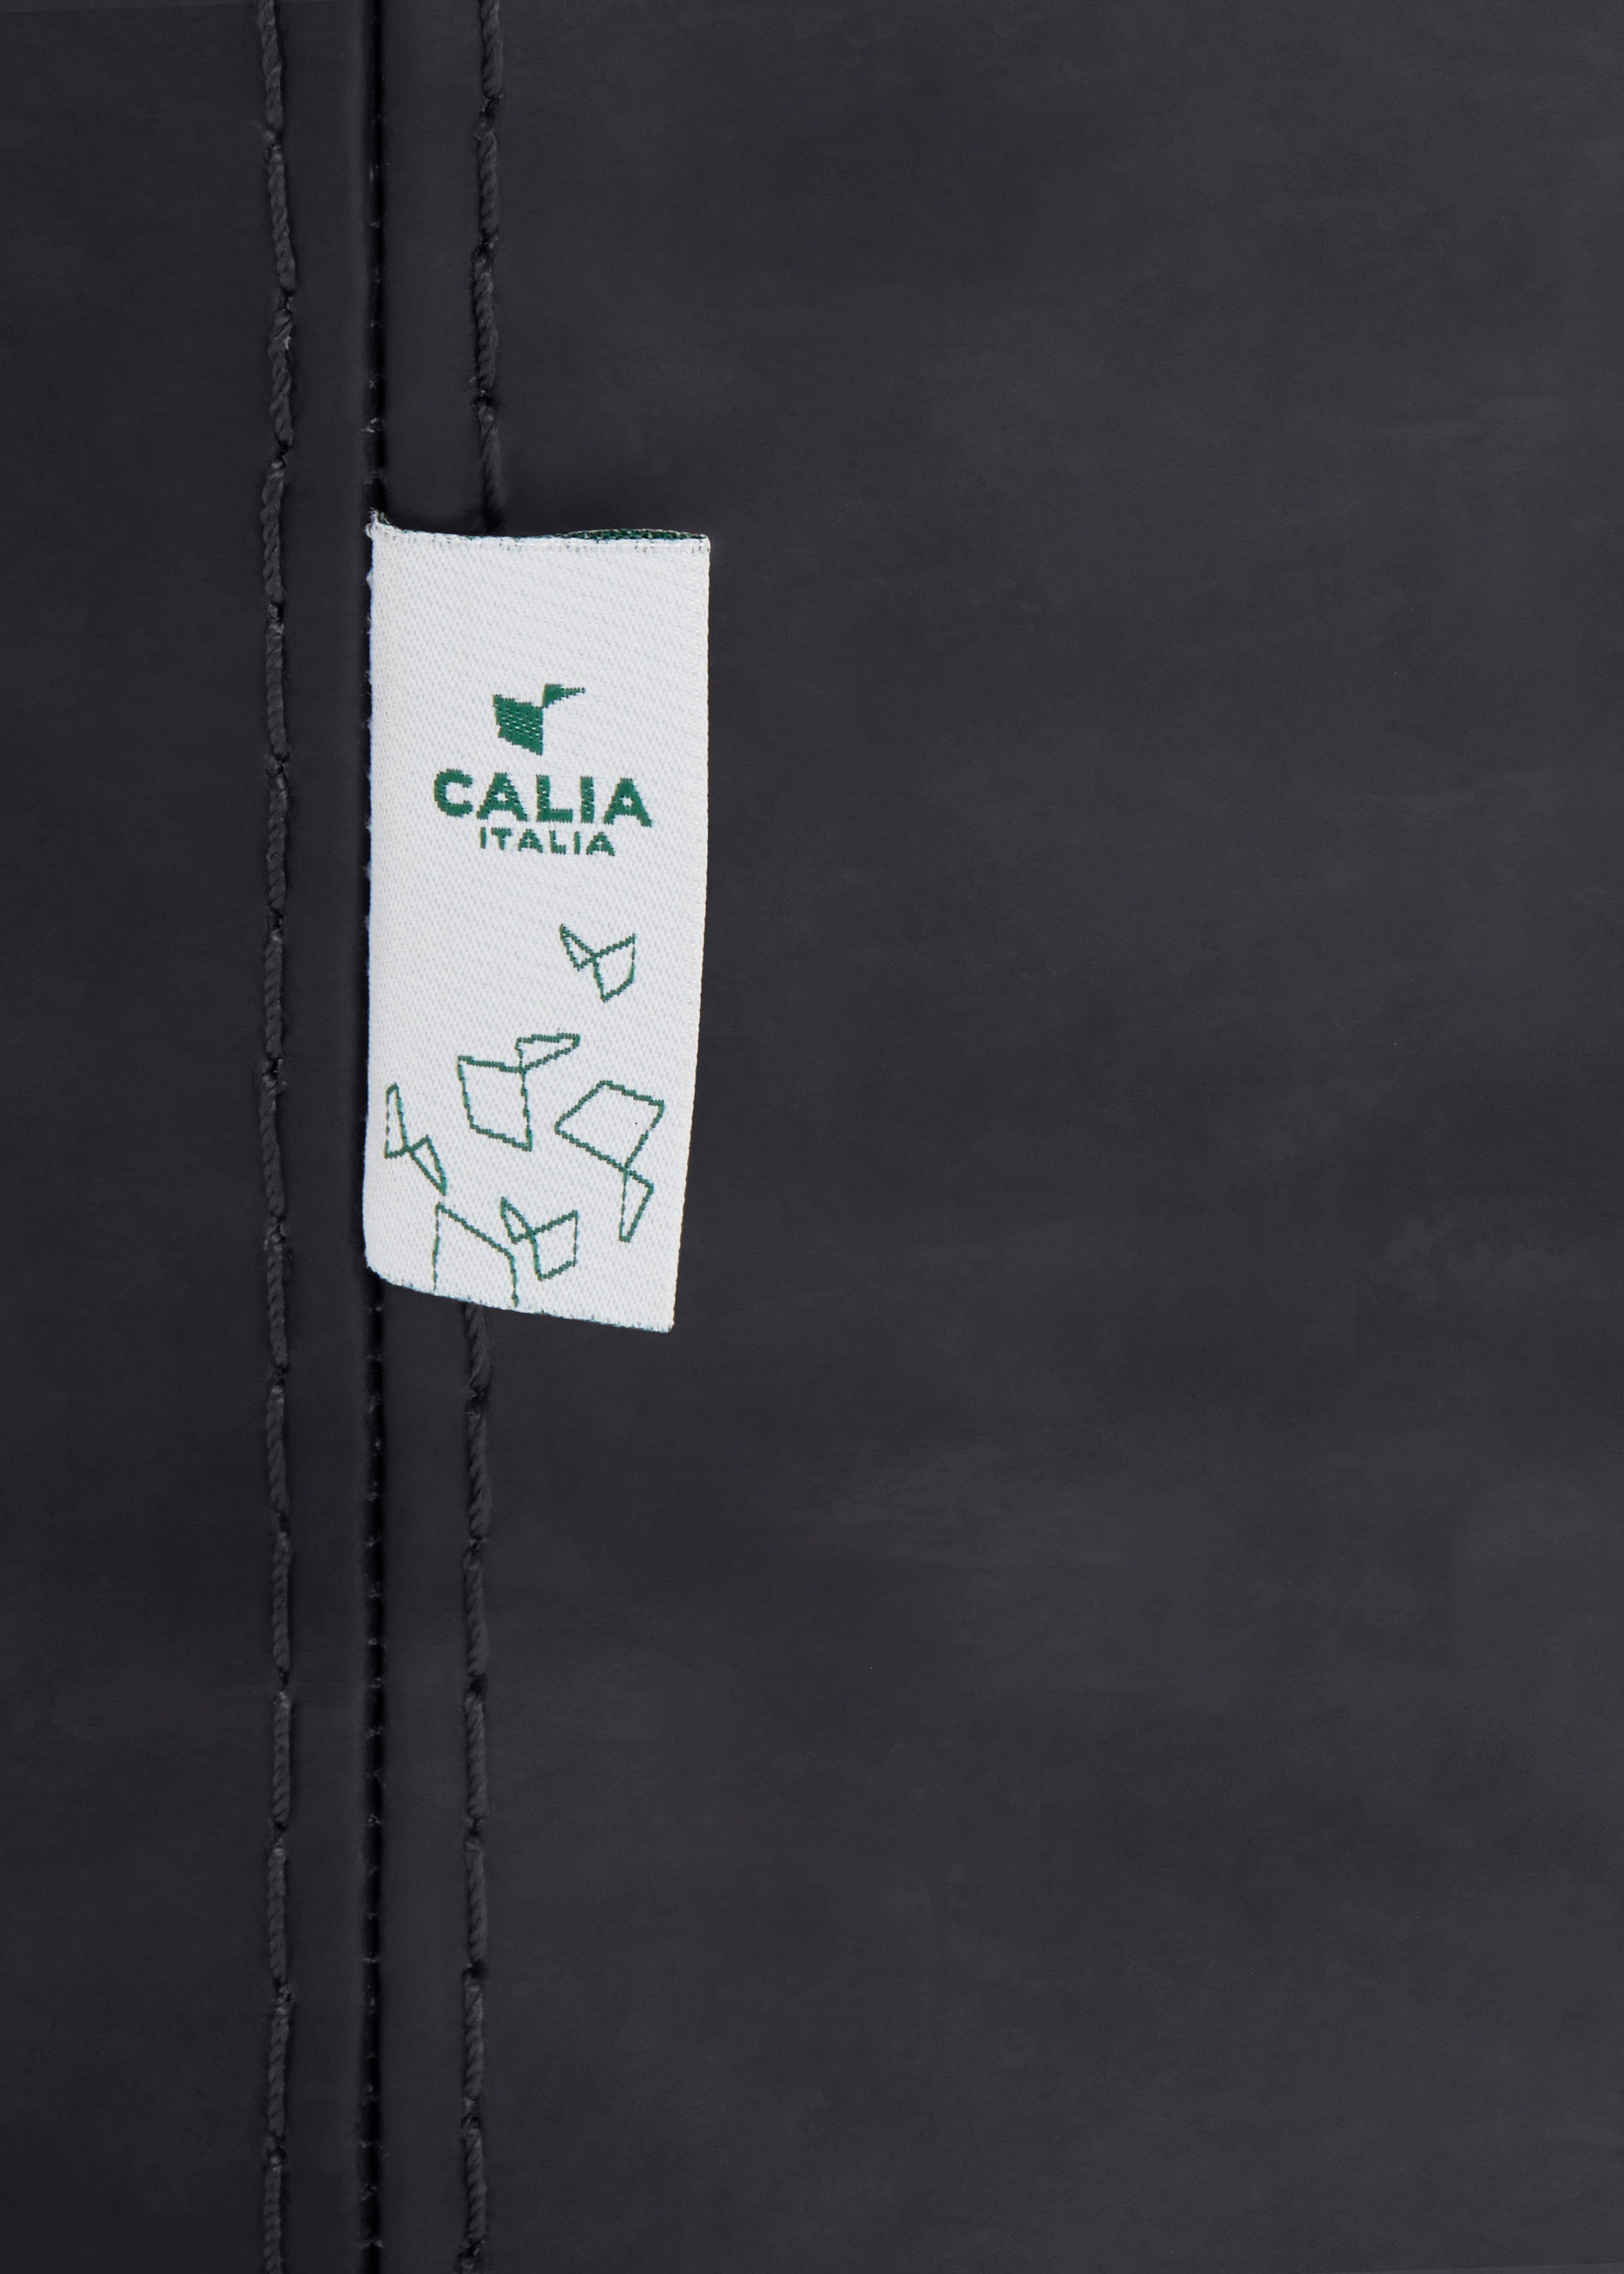 Ginevra black Gaia, ITALIA CALIA Luxus-Microfaser Care Sessel Hydro mit